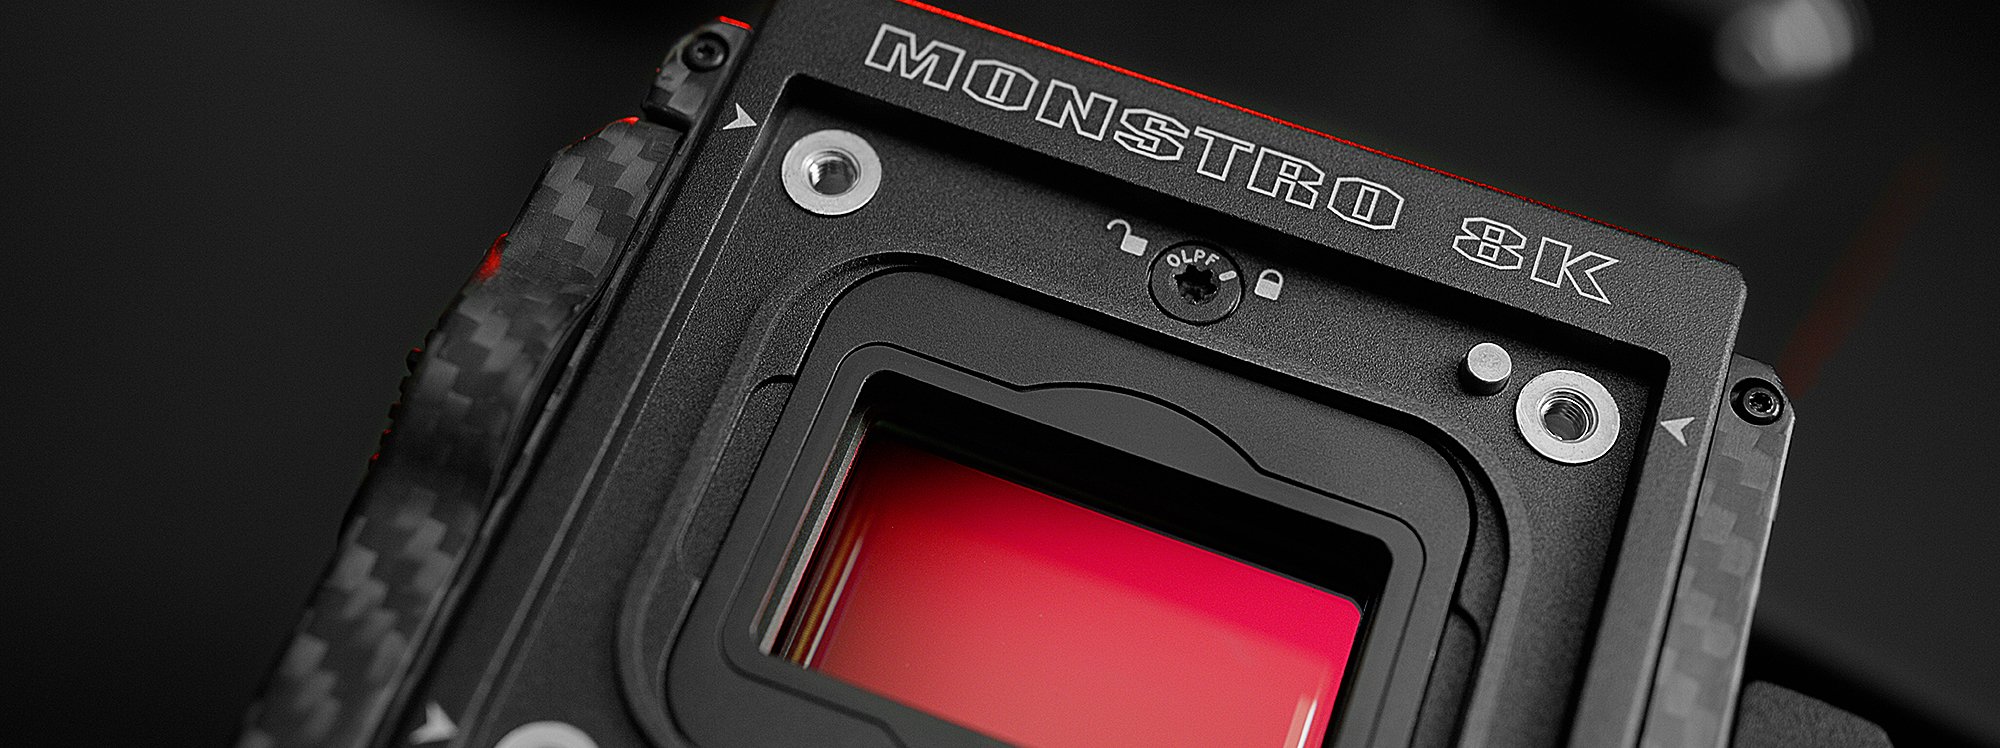 morder Ligner Kunstneriske Red Unveils Monstro 8K VV Sensor - The American Society of Cinematographers  (en-US)